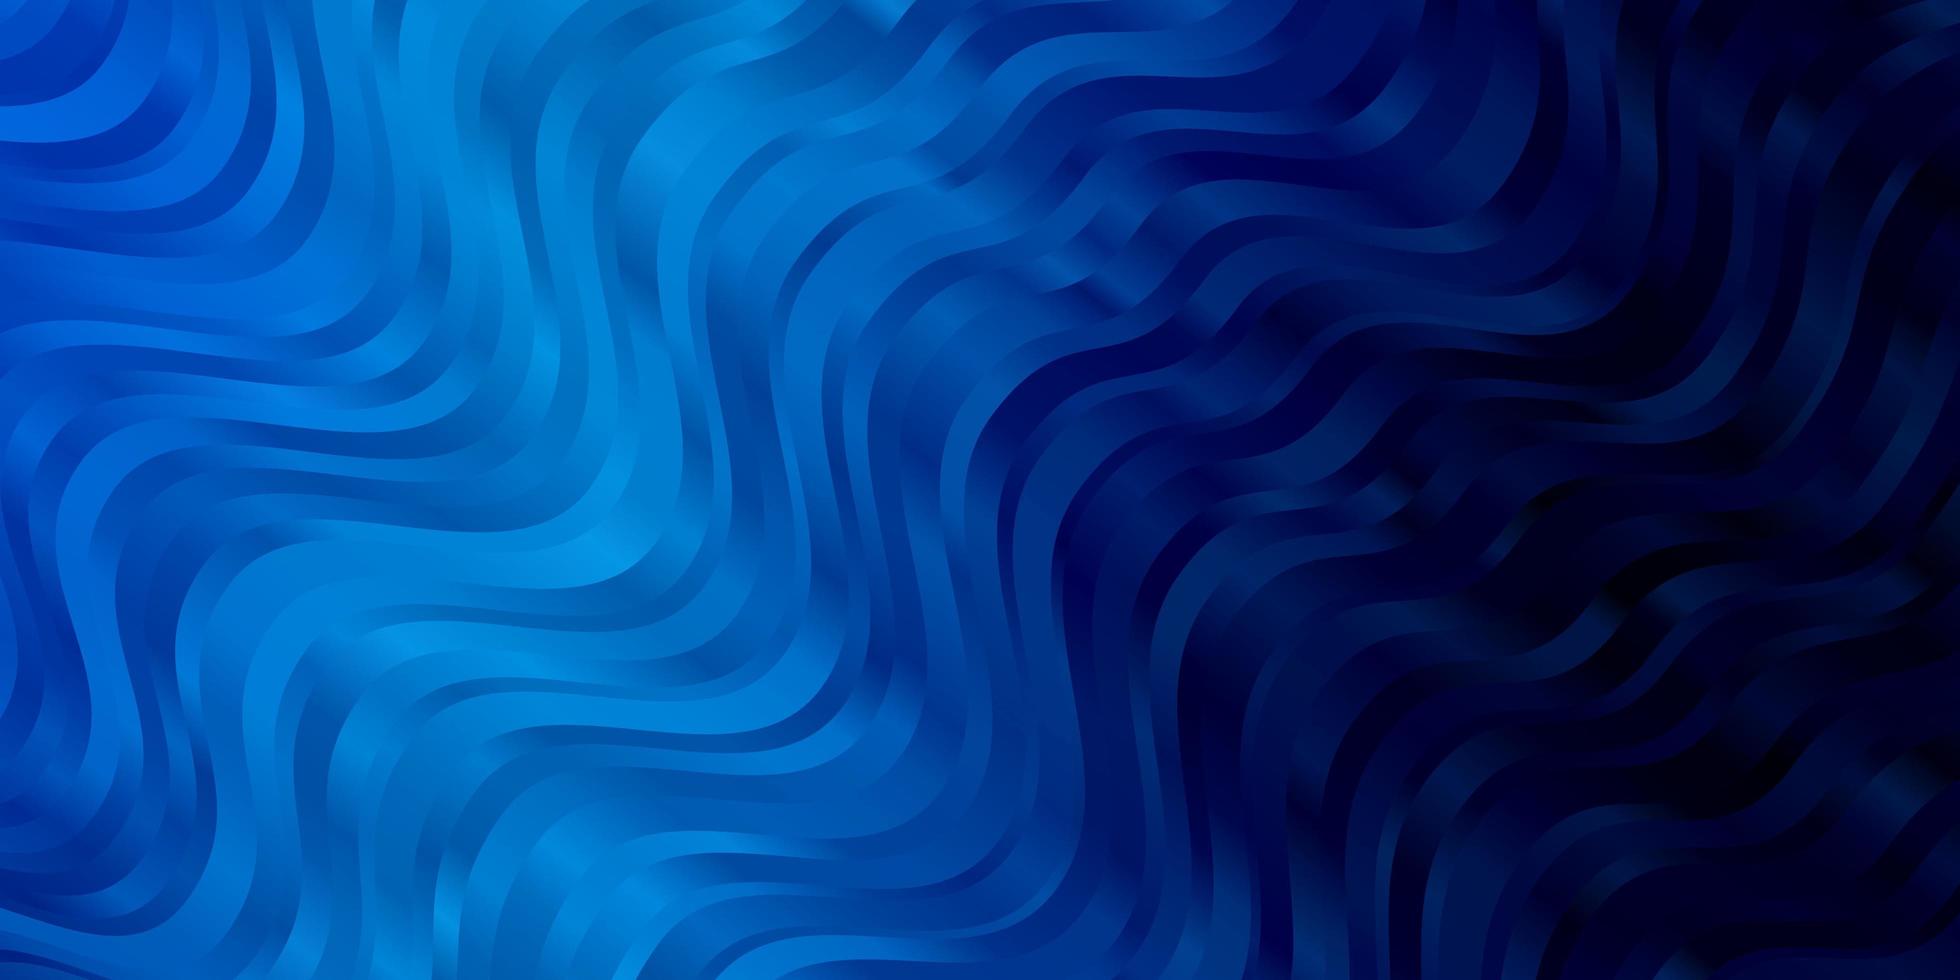 mörkblå vektor bakgrund med kurvor